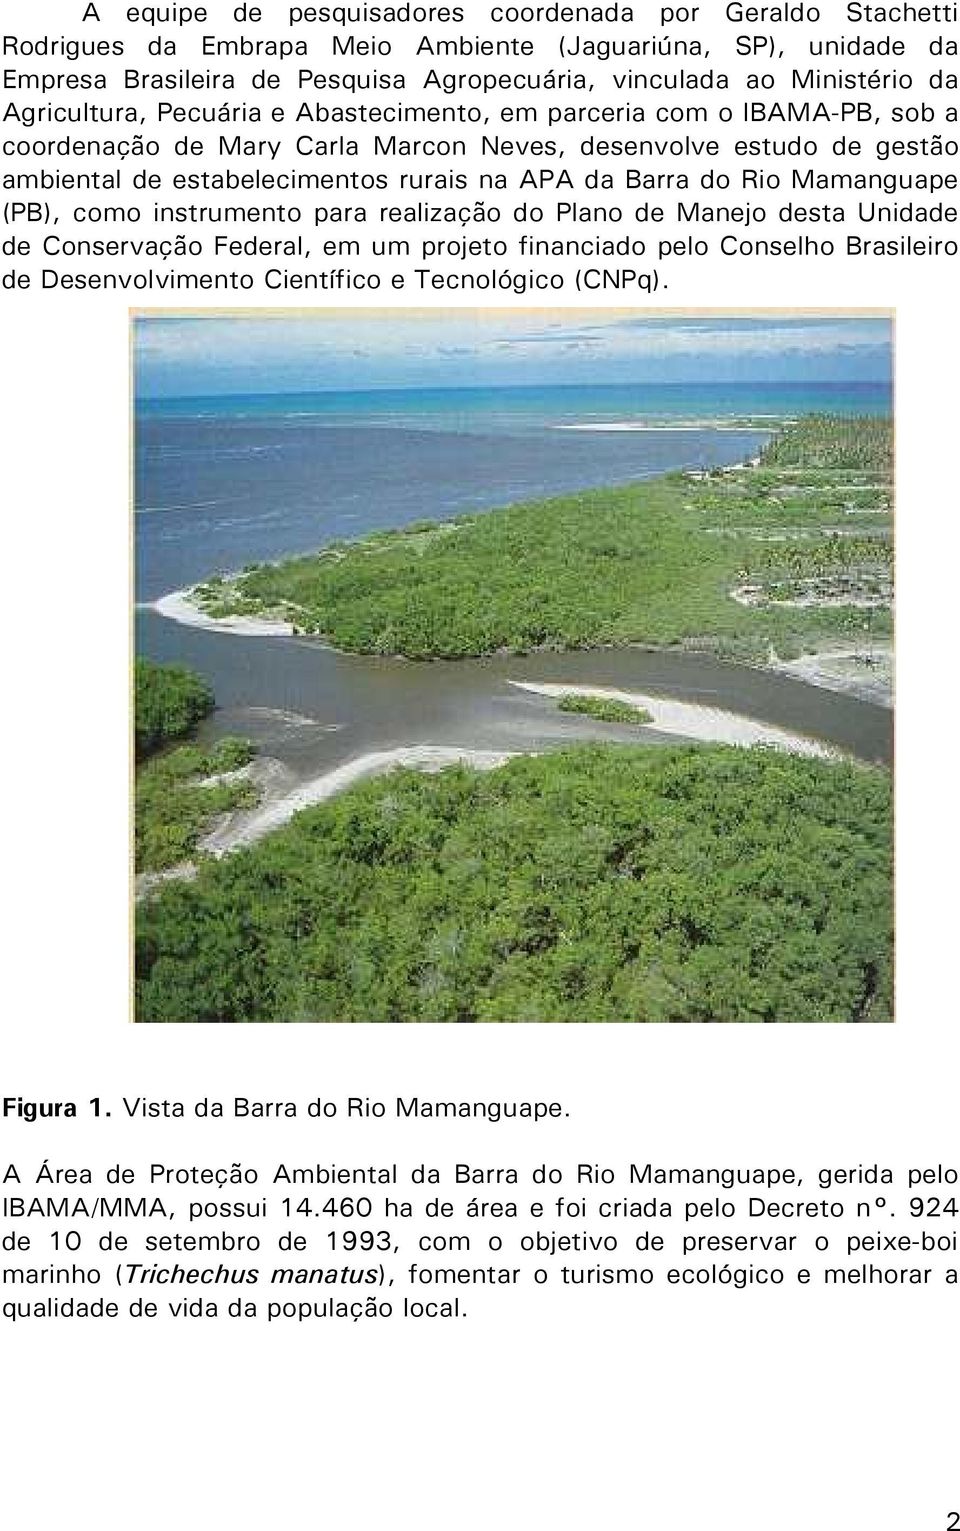 Rio Mamanguape (PB), como instrumento para realização do Plano de Manejo desta Unidade de Conservação Federal, em um projeto financiado pelo Conselho Brasileiro de Desenvolvimento Científico e